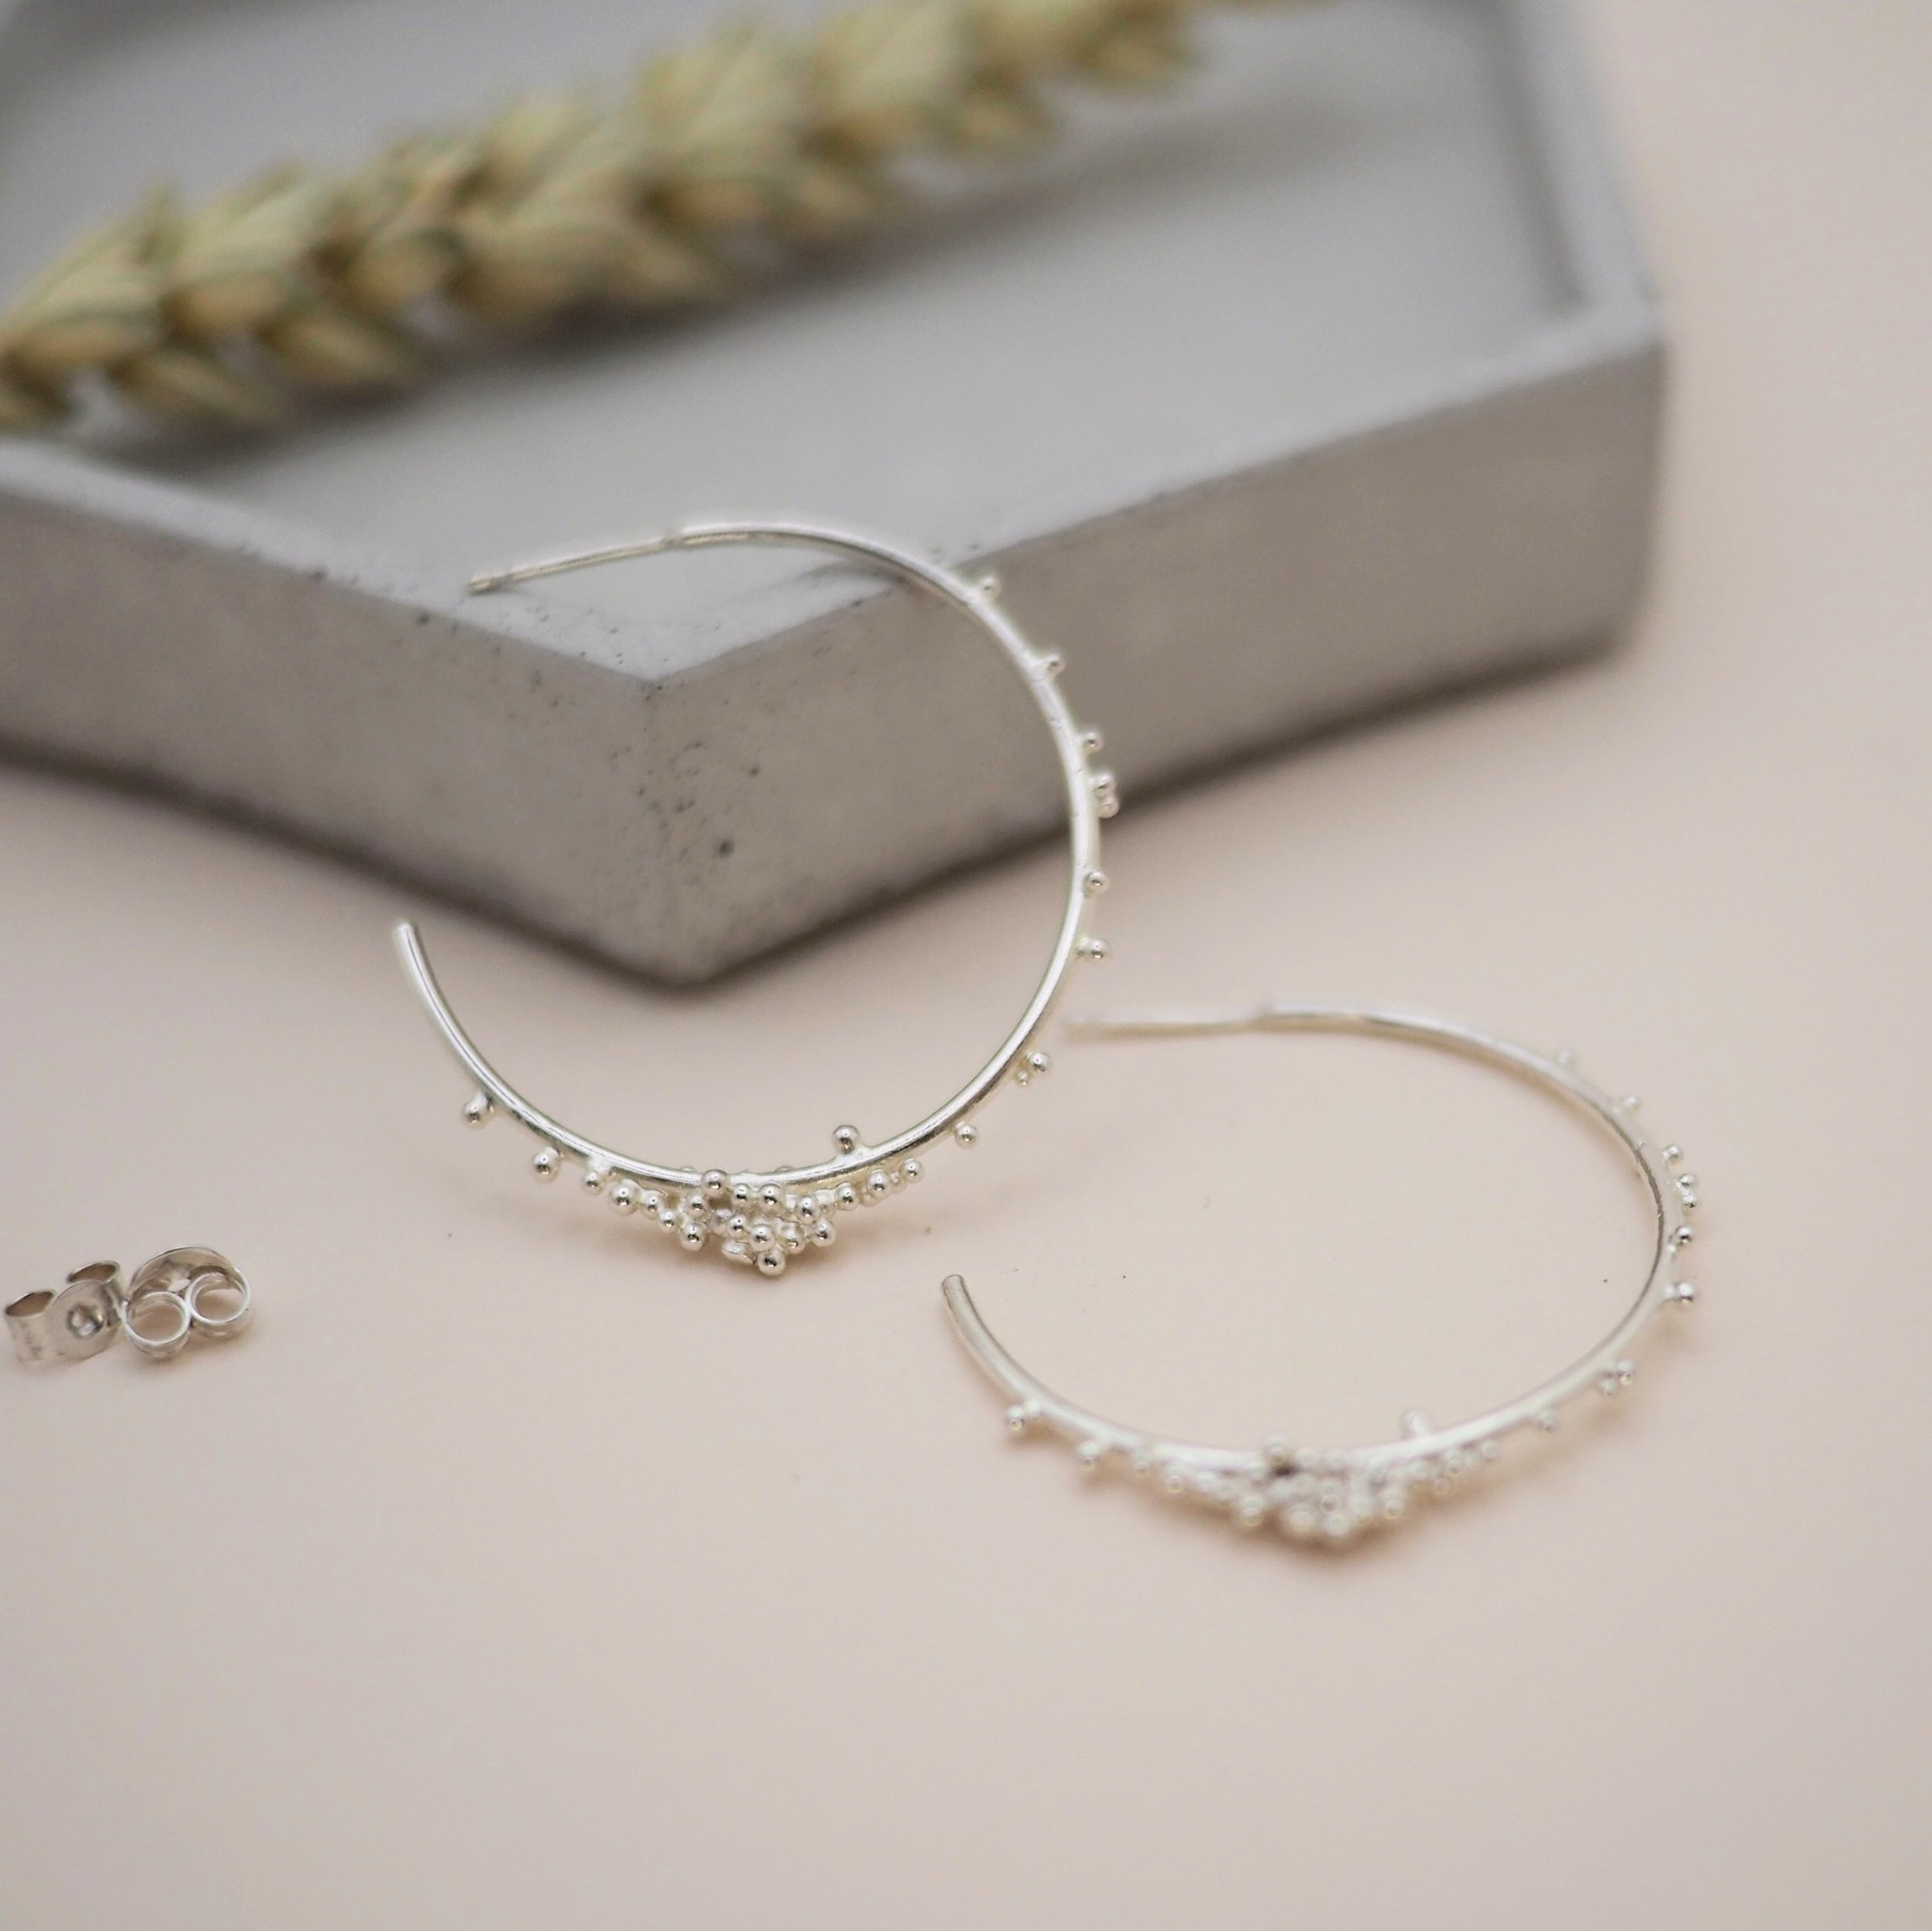 Kate-Wainwright-Jewellery-Recycled-Silver-Granulated-Hoop-Earrings-Large-11.JPG